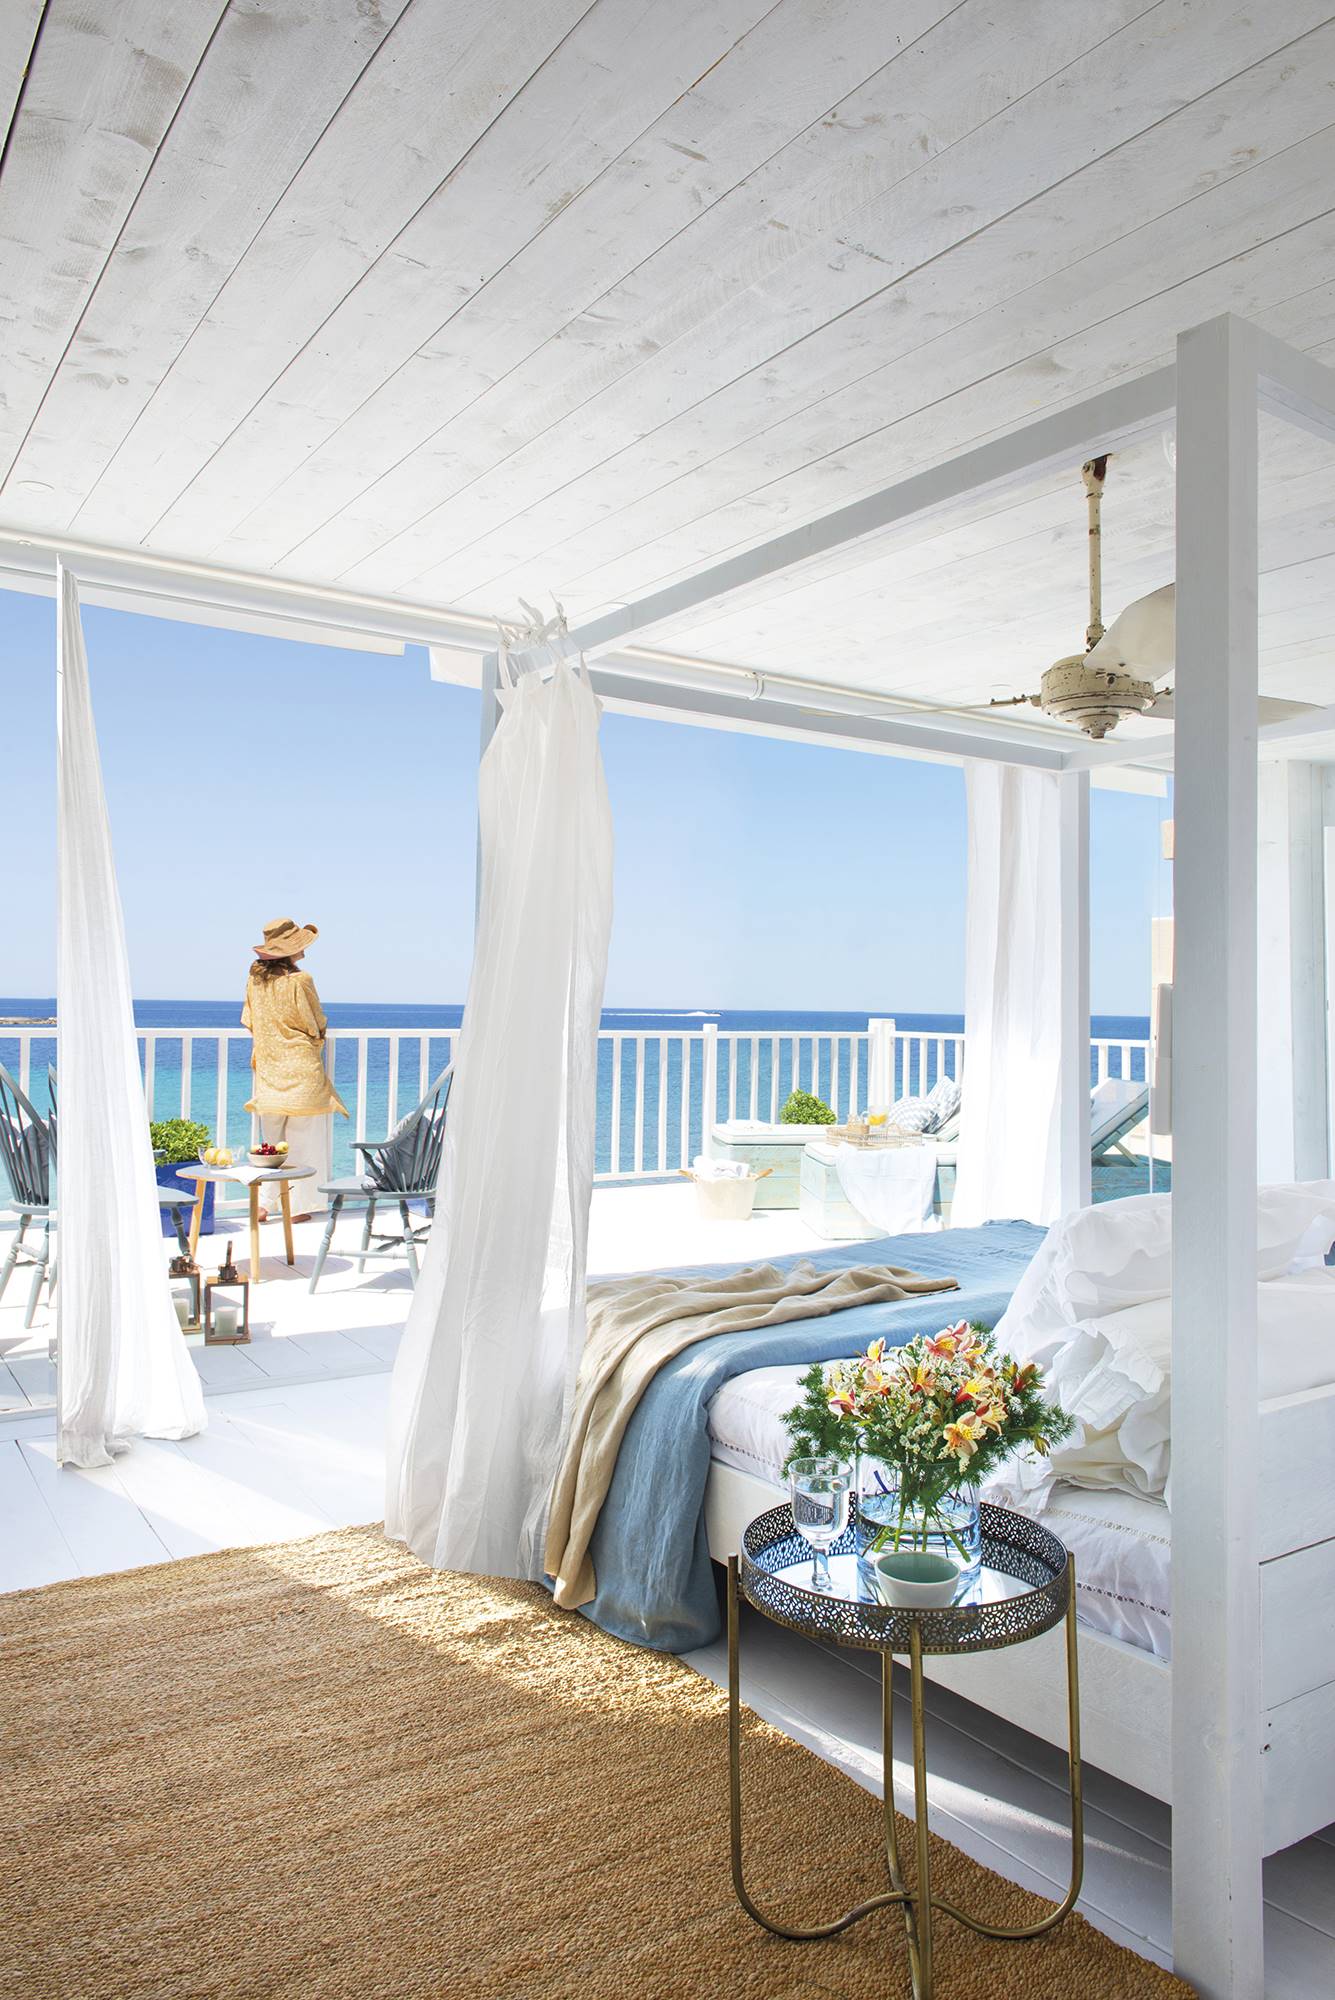 Dormitorio de verano abierto a la terraza decorado en blanco y ropa de cama azul. 